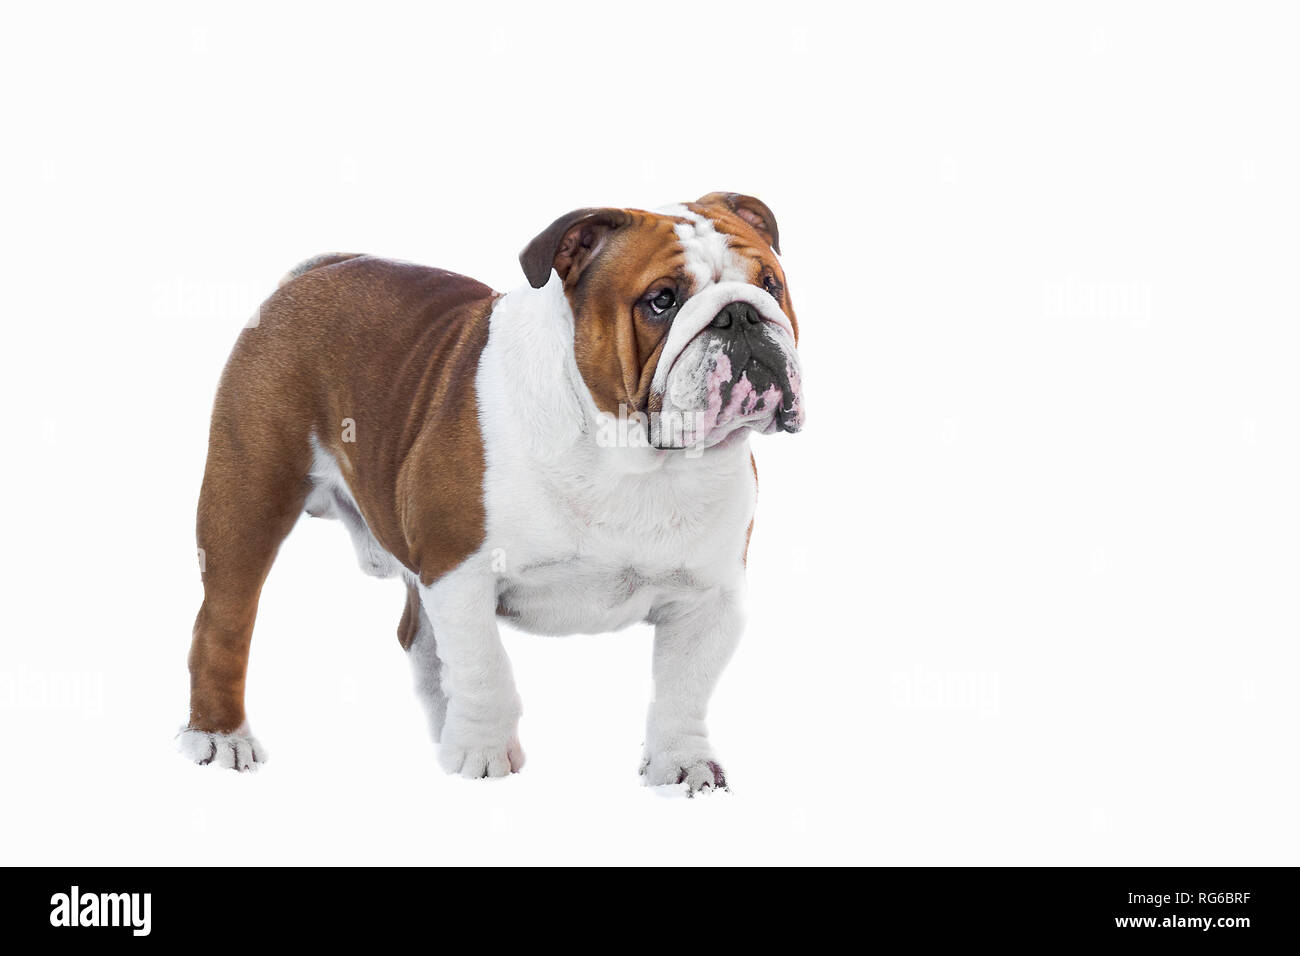 Englische Bulldogge weiße Farbe nach steht auf einem weißen Hintergrund  close-up isolieren Britische Stockfotografie - Alamy